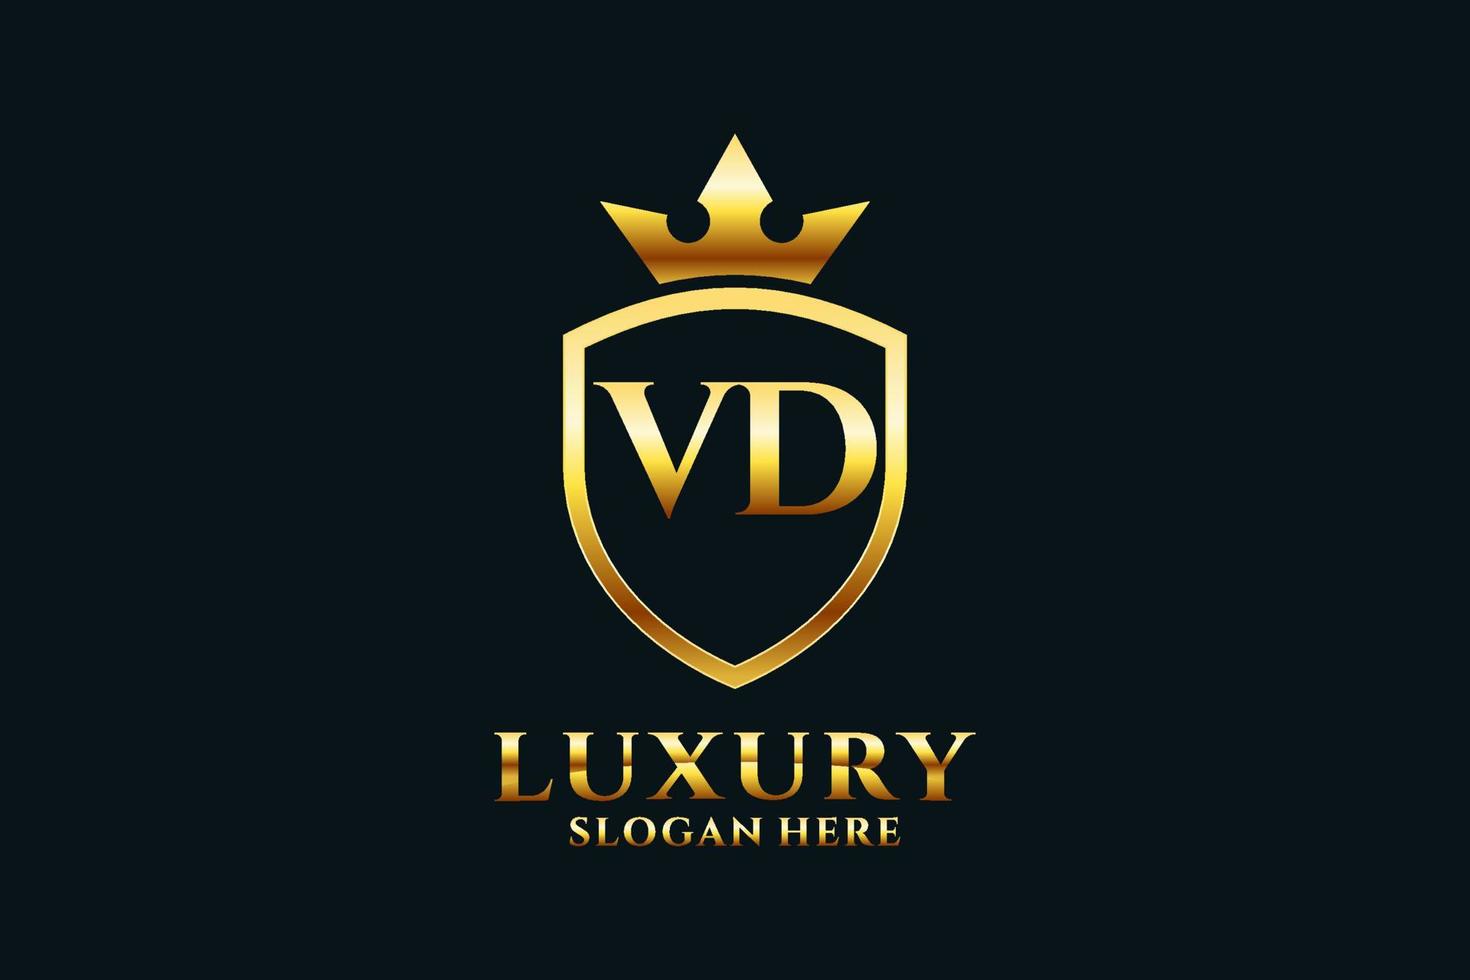 logotipo de monograma de lujo inicial vd elegante o plantilla de placa con pergaminos y corona real - perfecto para proyectos de marca de lujo vector